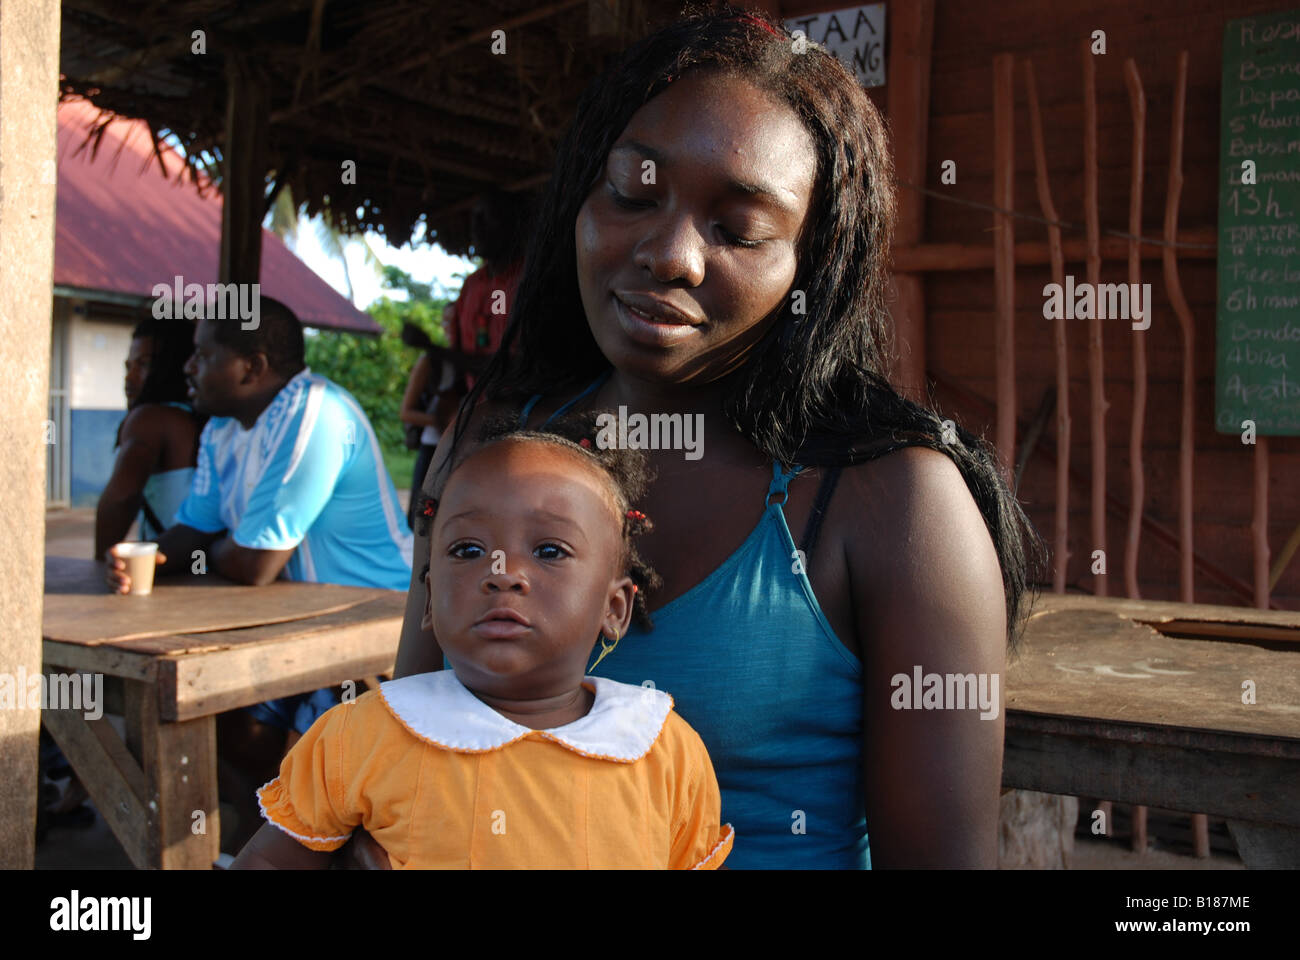 Jeune femme noire avec une petite fille sur ses genoux Banque D'Images